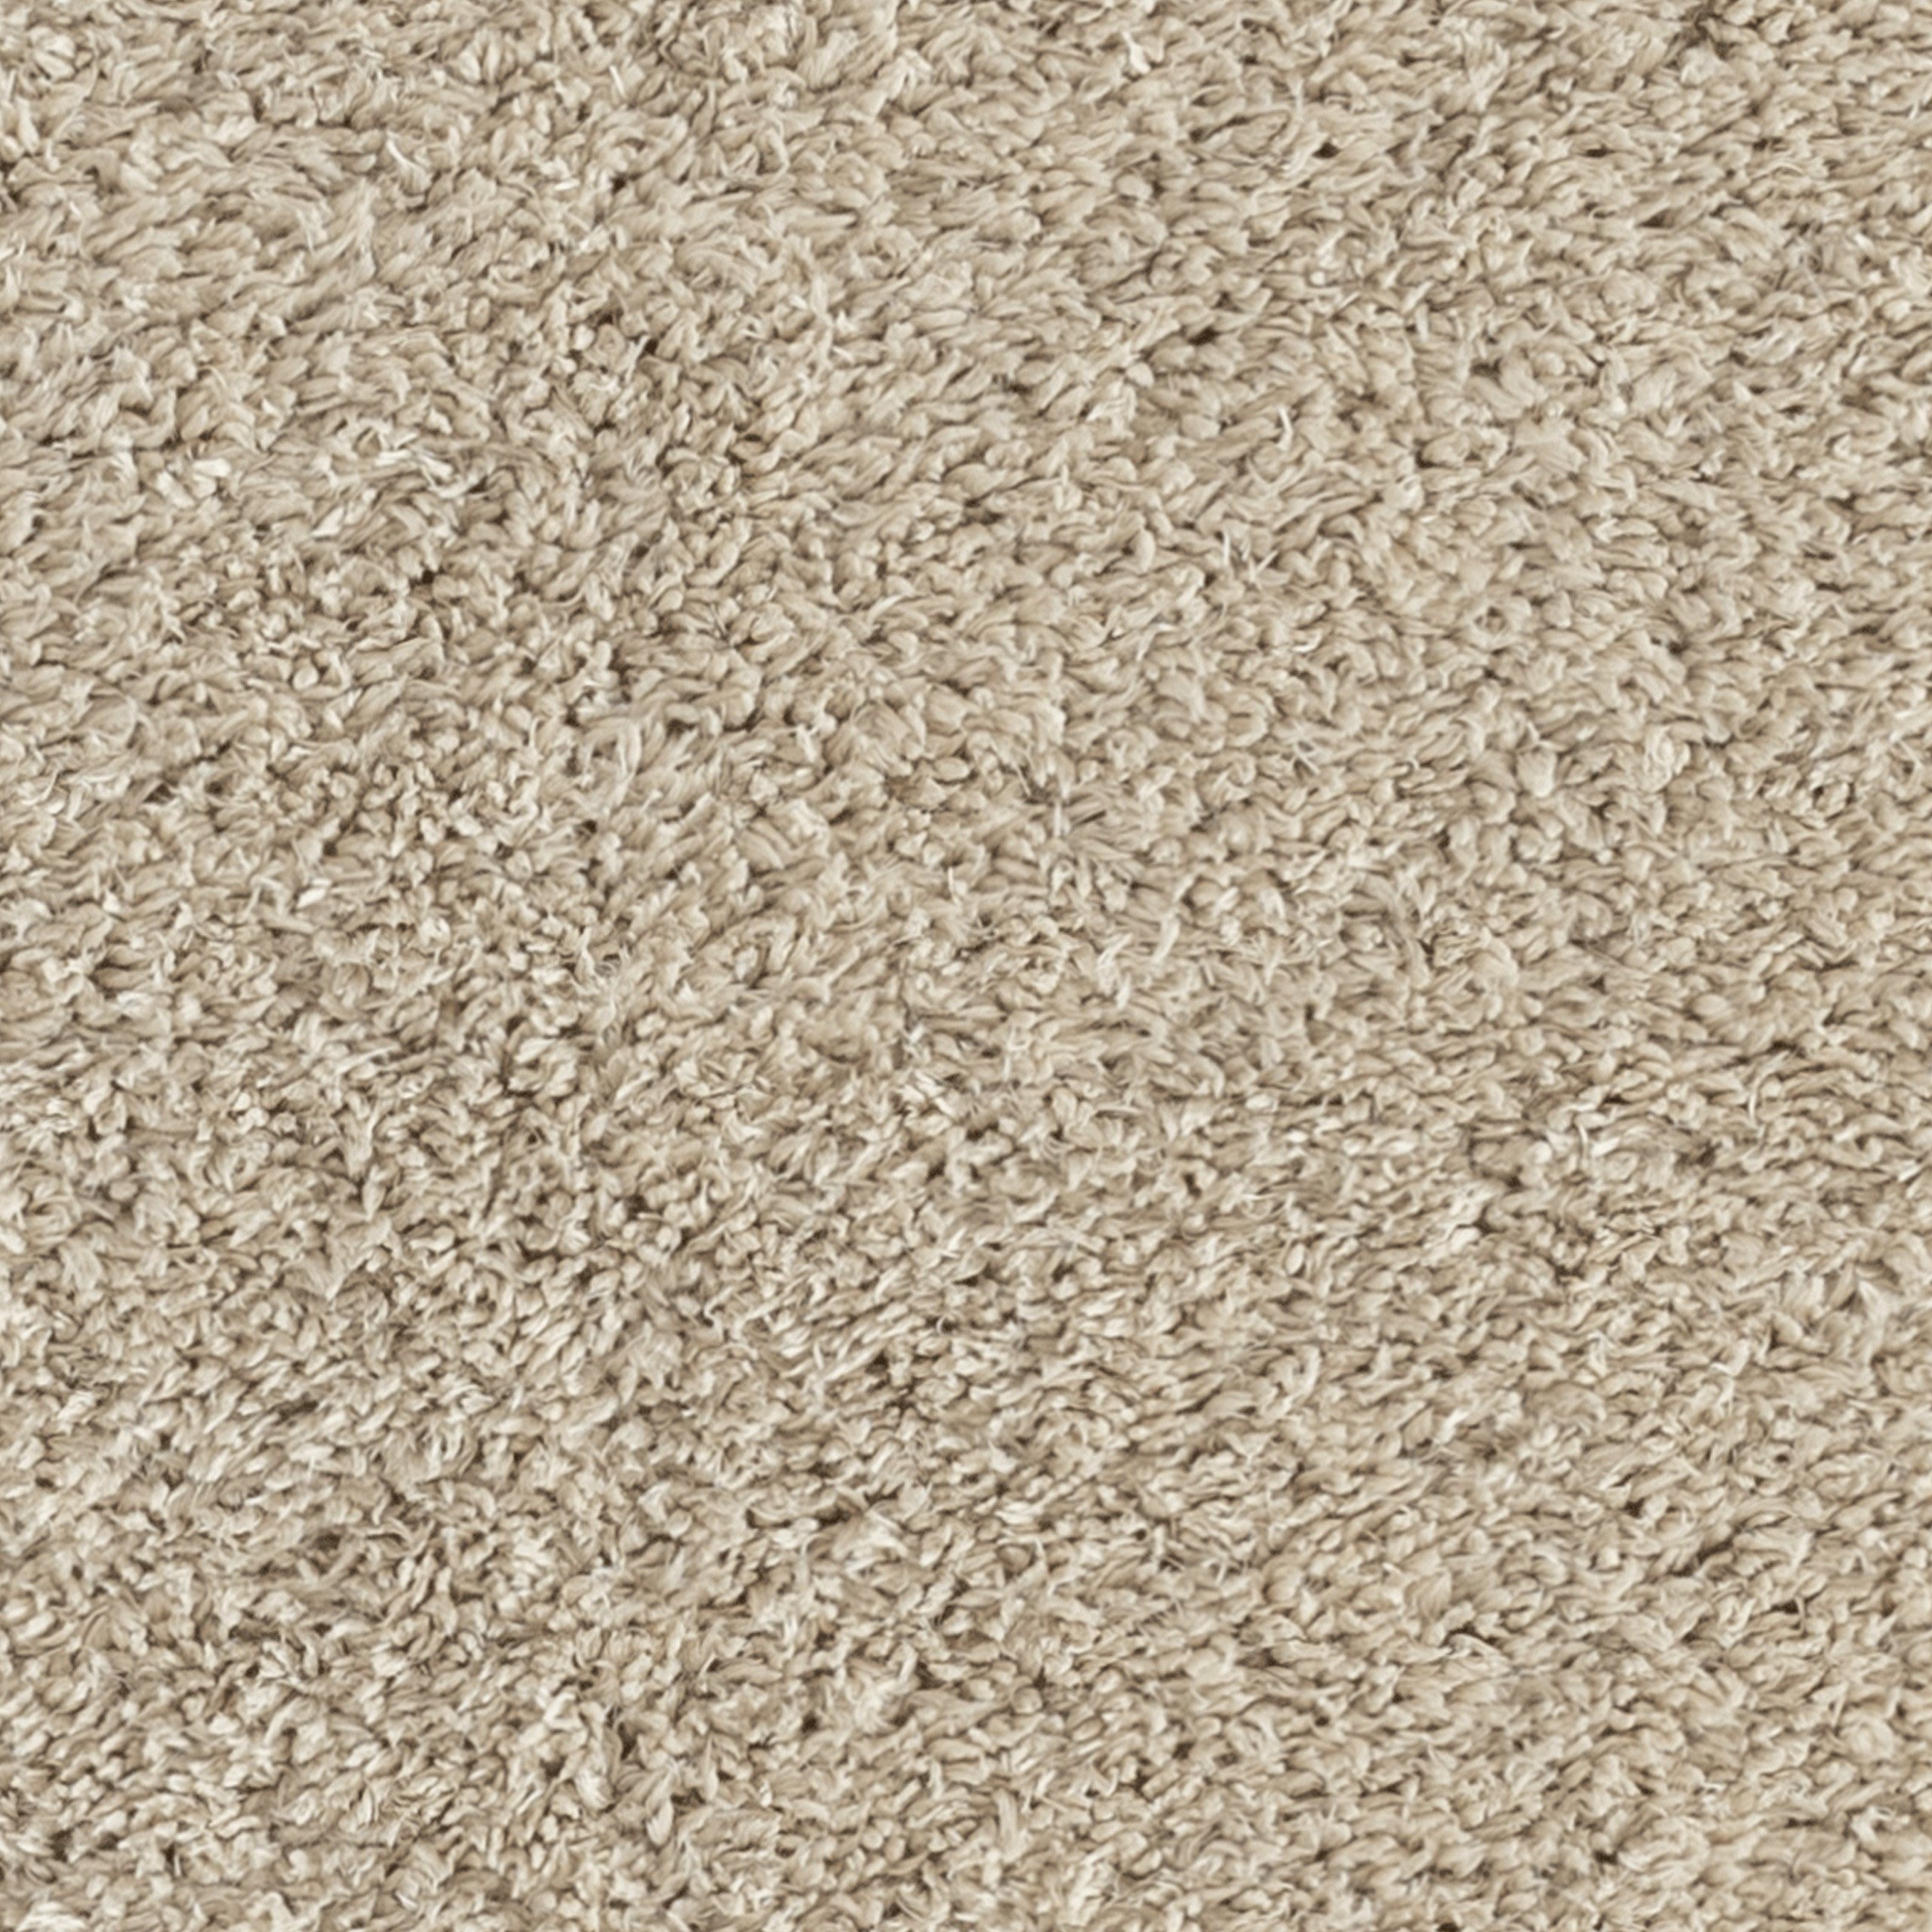 Recycle Teppich Flauschteppich Teppich-Traum, Hautfreundlich, Für rechteckig, Umweltfreundlicher Strapazierfähig Wohnzimmer, Allergiker beige, geeignet,